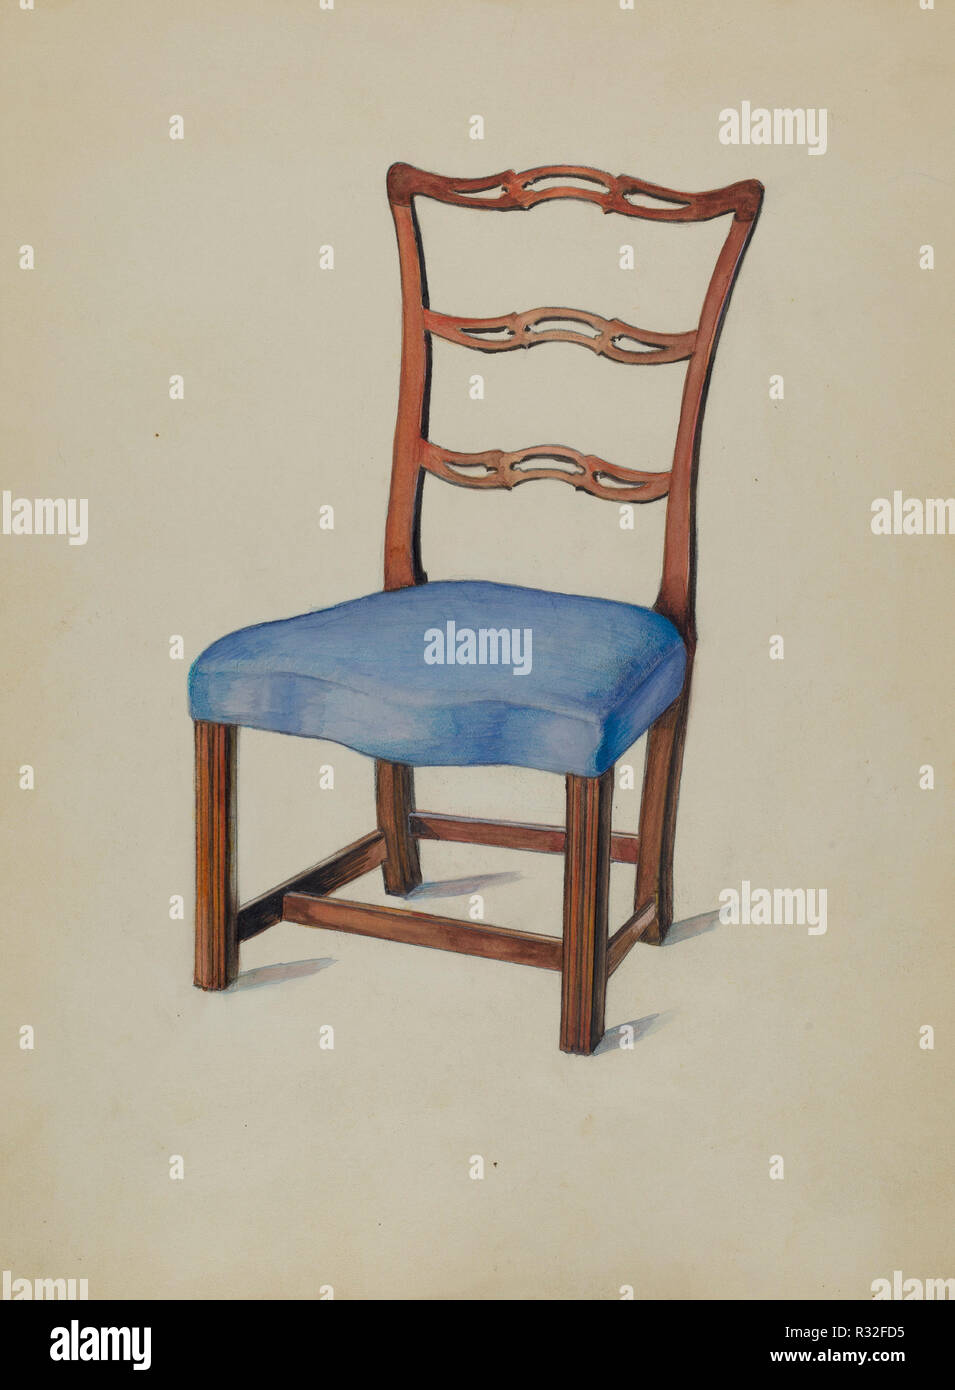 Side Chair. En date du : 1935/1942. Médium : Aquarelle, mine de plomb et gouache sur carton. Musée : National Gallery of Art, Washington DC. Auteur : Carl Weiss. Banque D'Images